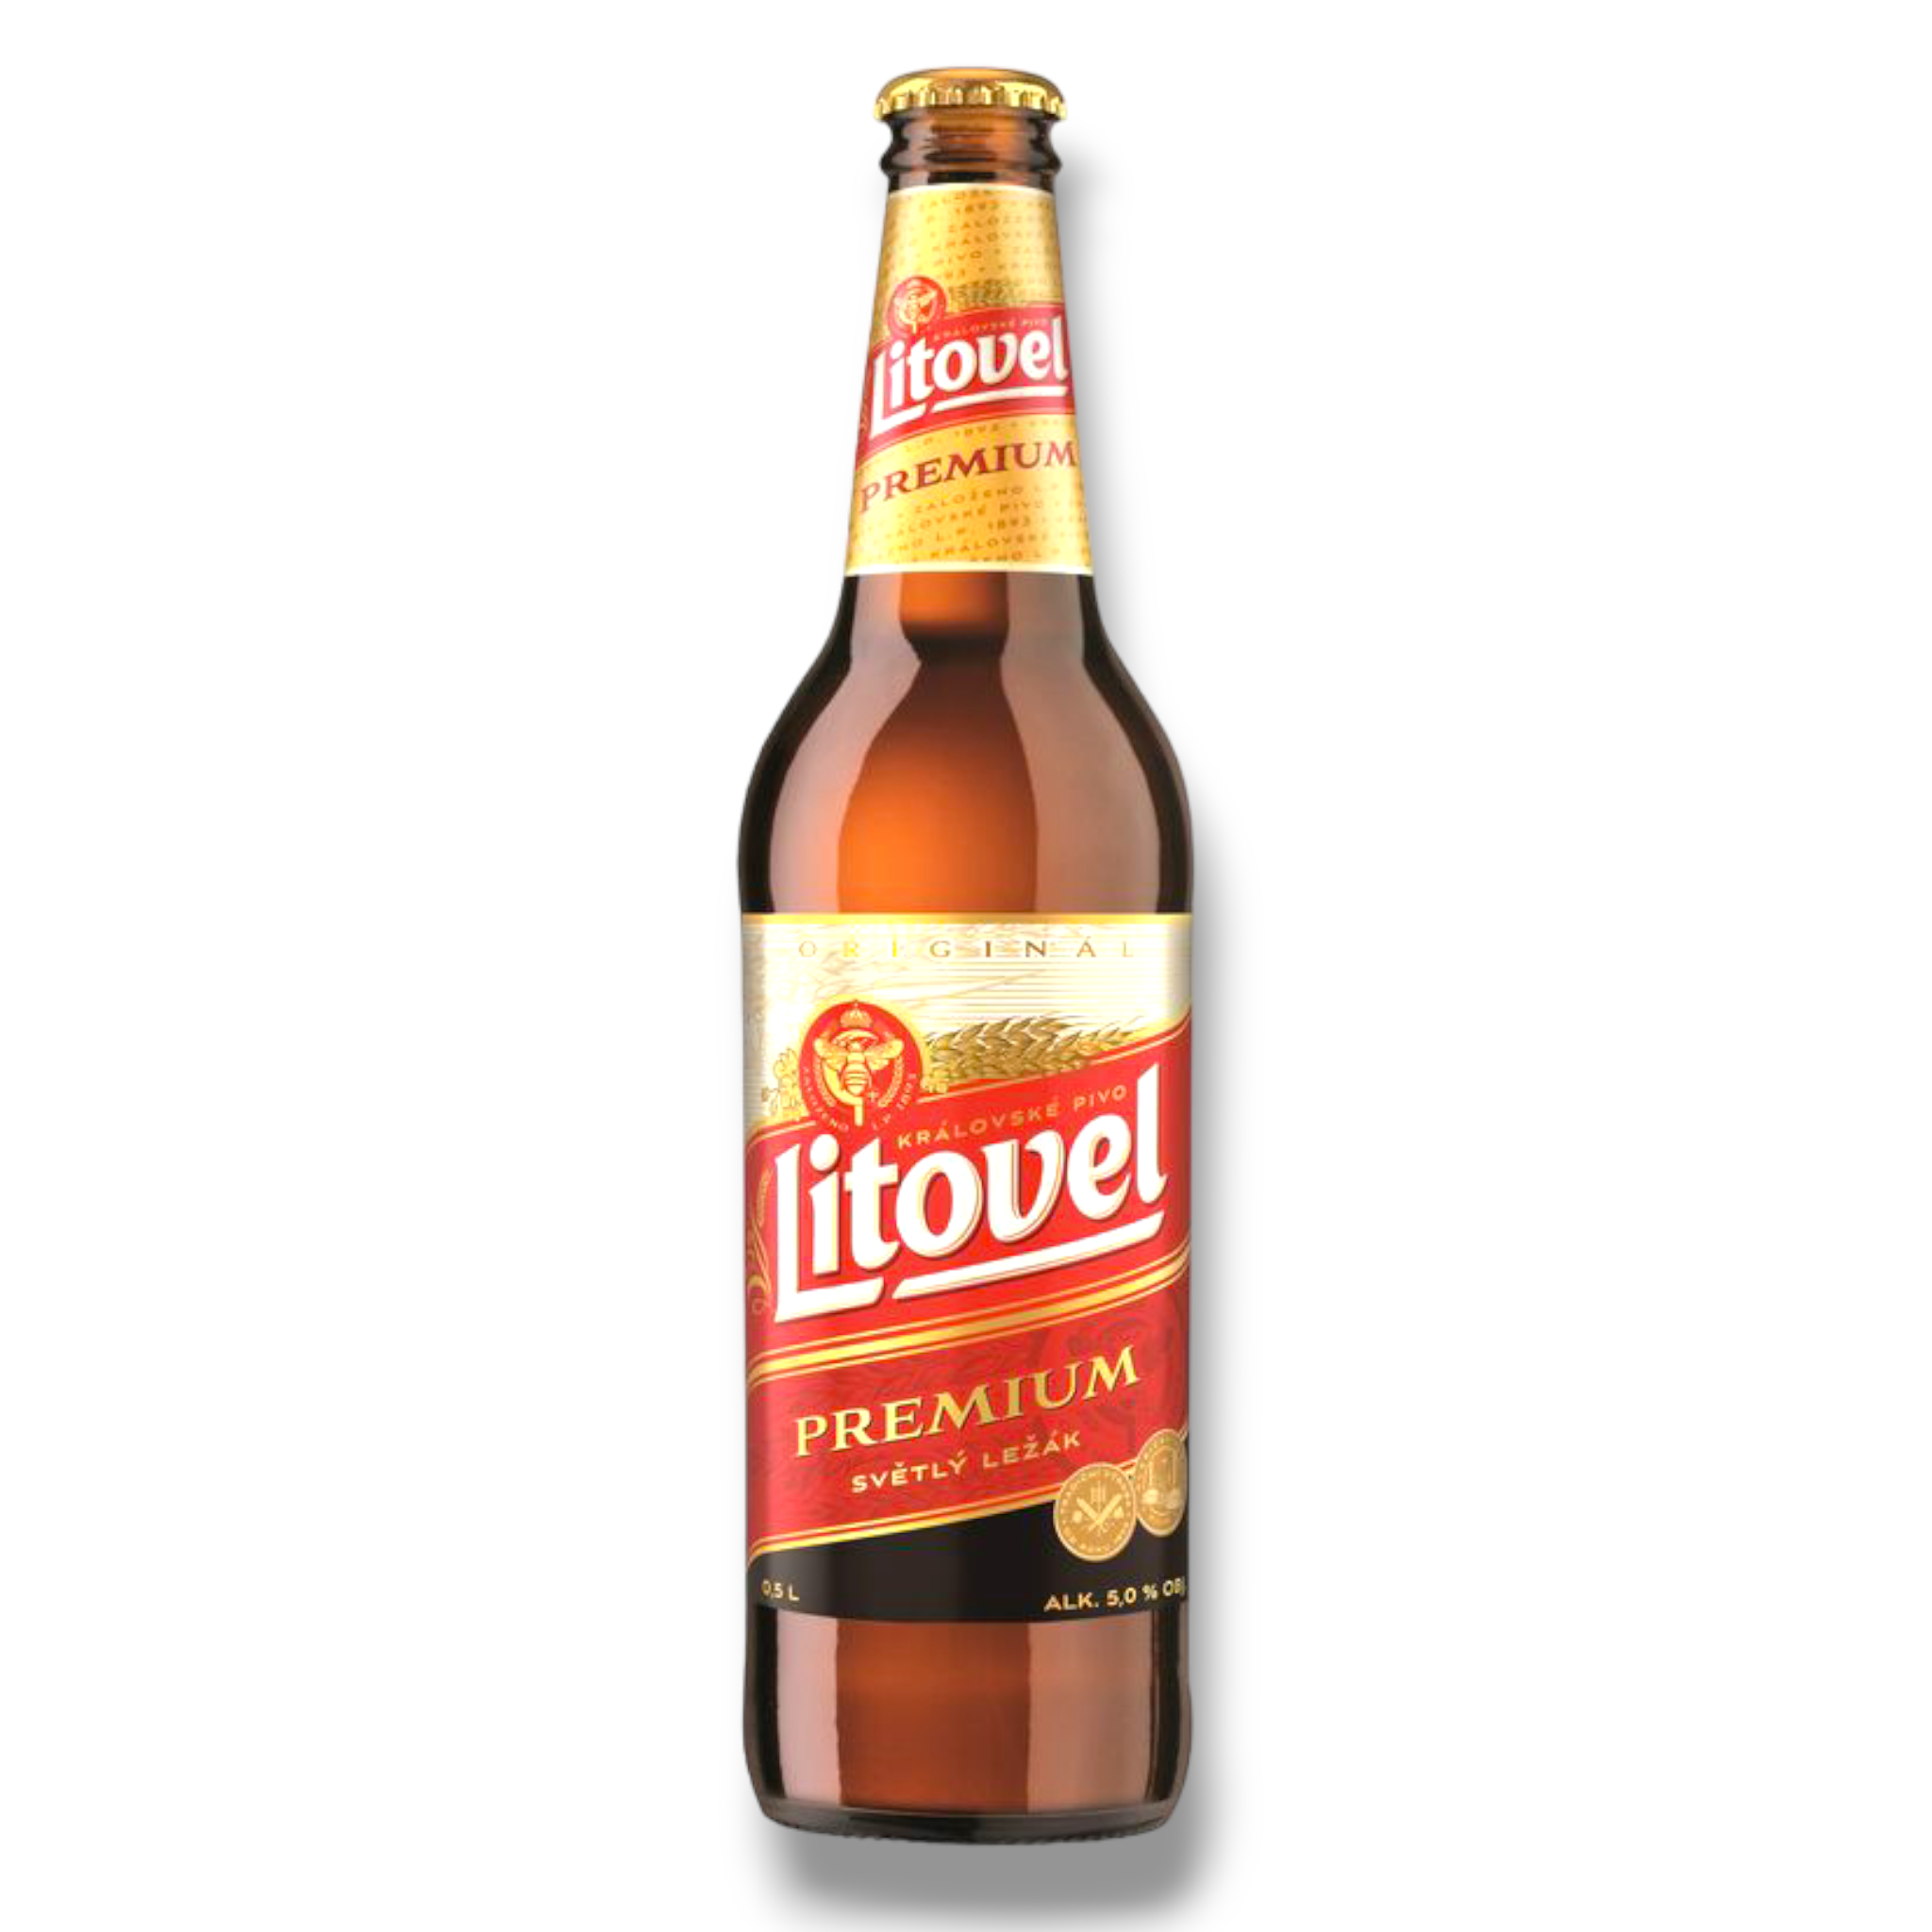 Litovel Premium 0,5l- Premium Lagerbier aus Tschechien mit 5% Vol.